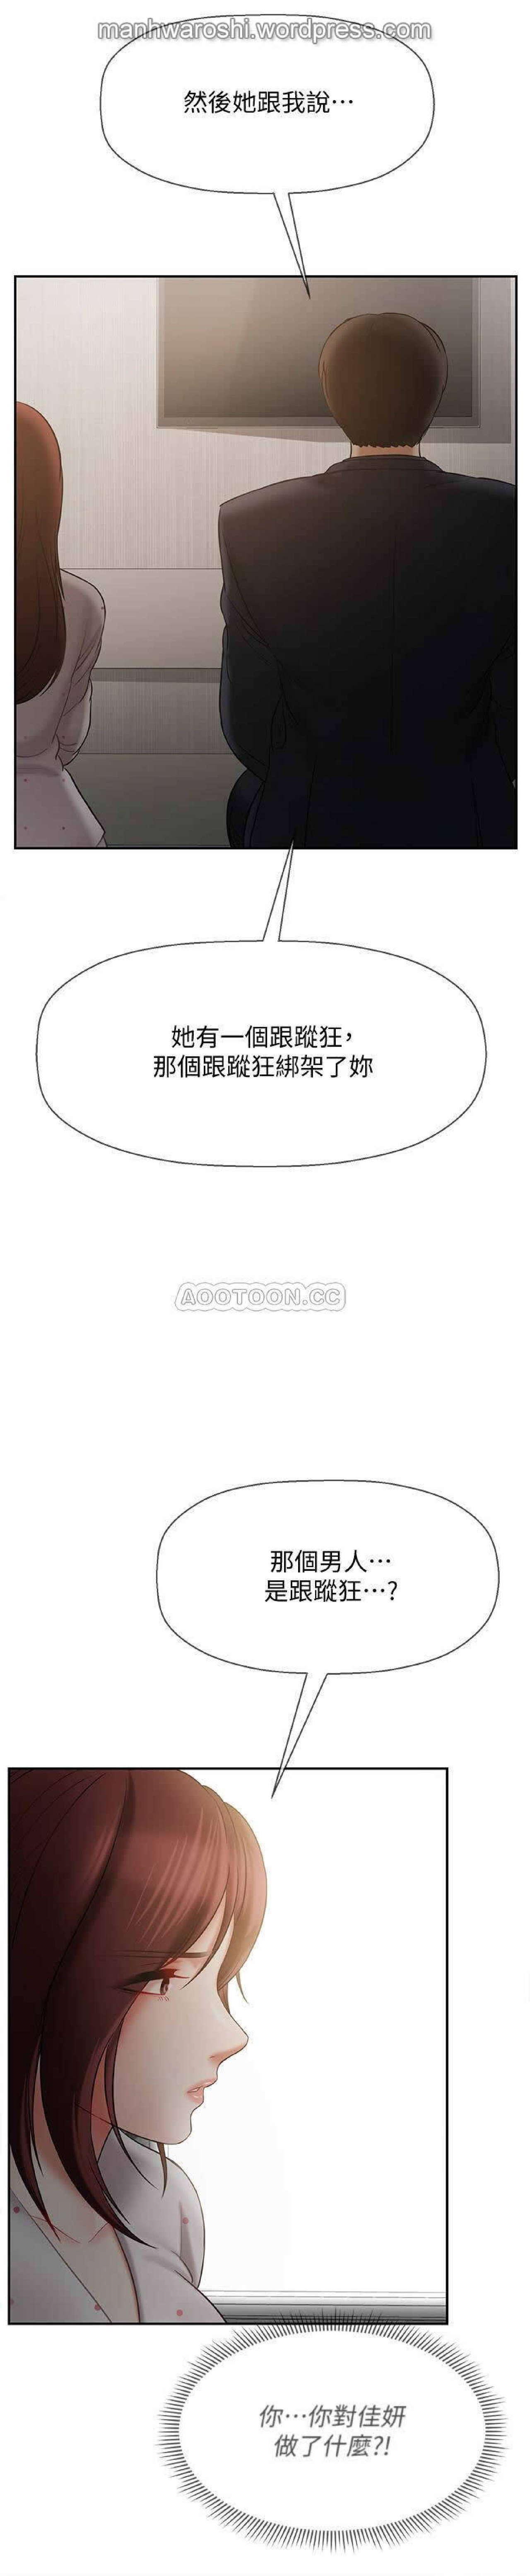 坏老师 | PHYSICAL CLASSROOM 12 [Chinese] Manhwa 29